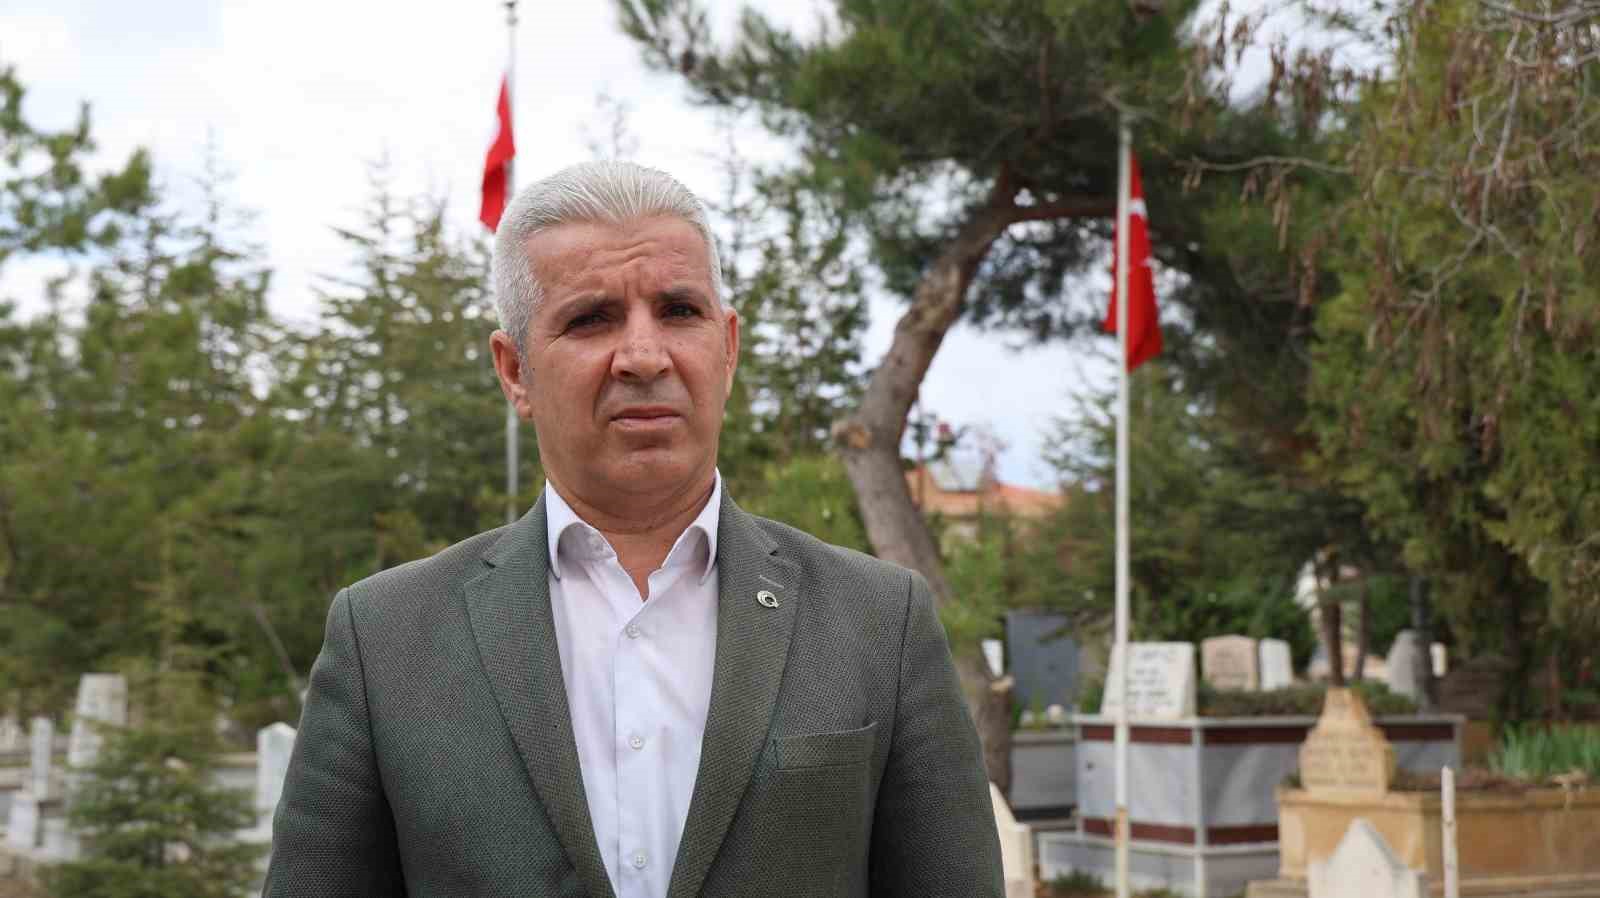 Şehit mezarlarında ’Türk bayrağı yok’ iddiası yalan çıktı
